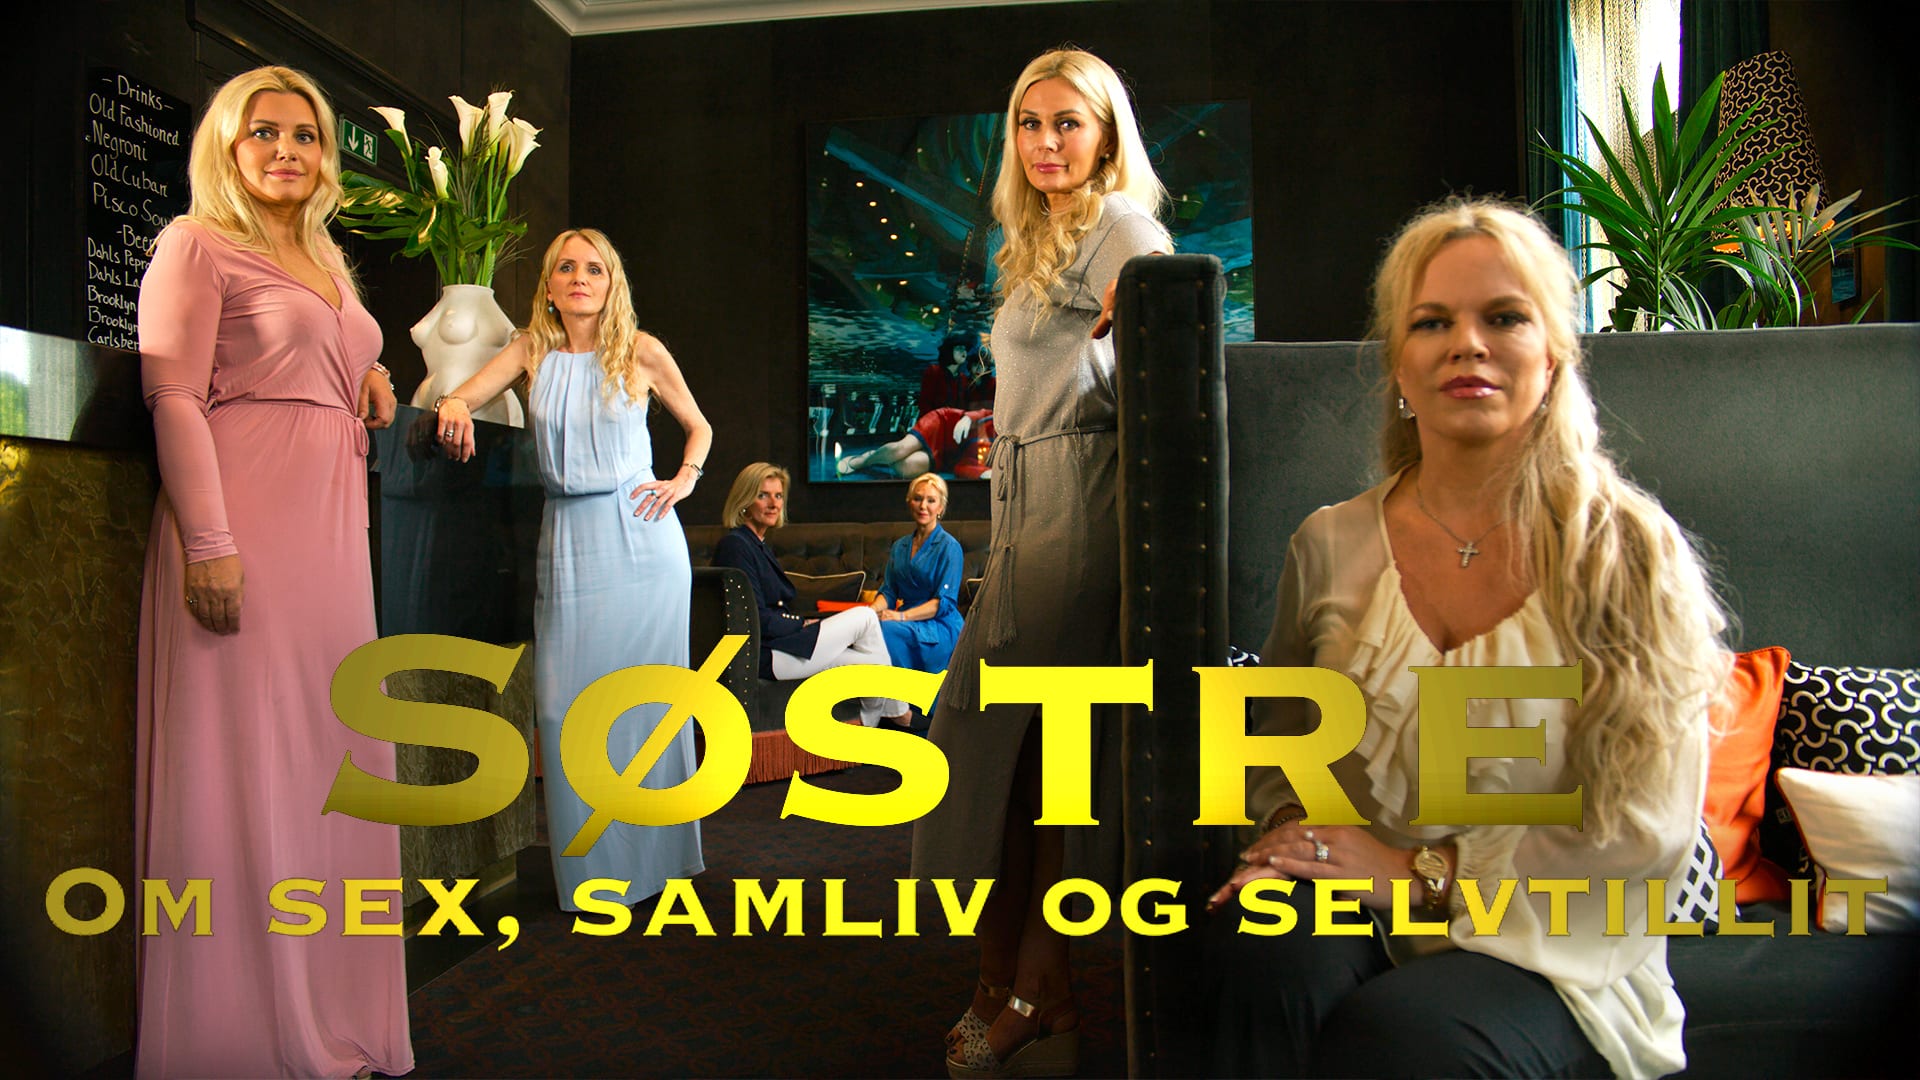 Herland Report TV serie "Søstre. Om samliv og selvtillit" sett av flere hundre tusen nordmenn: Herland Report